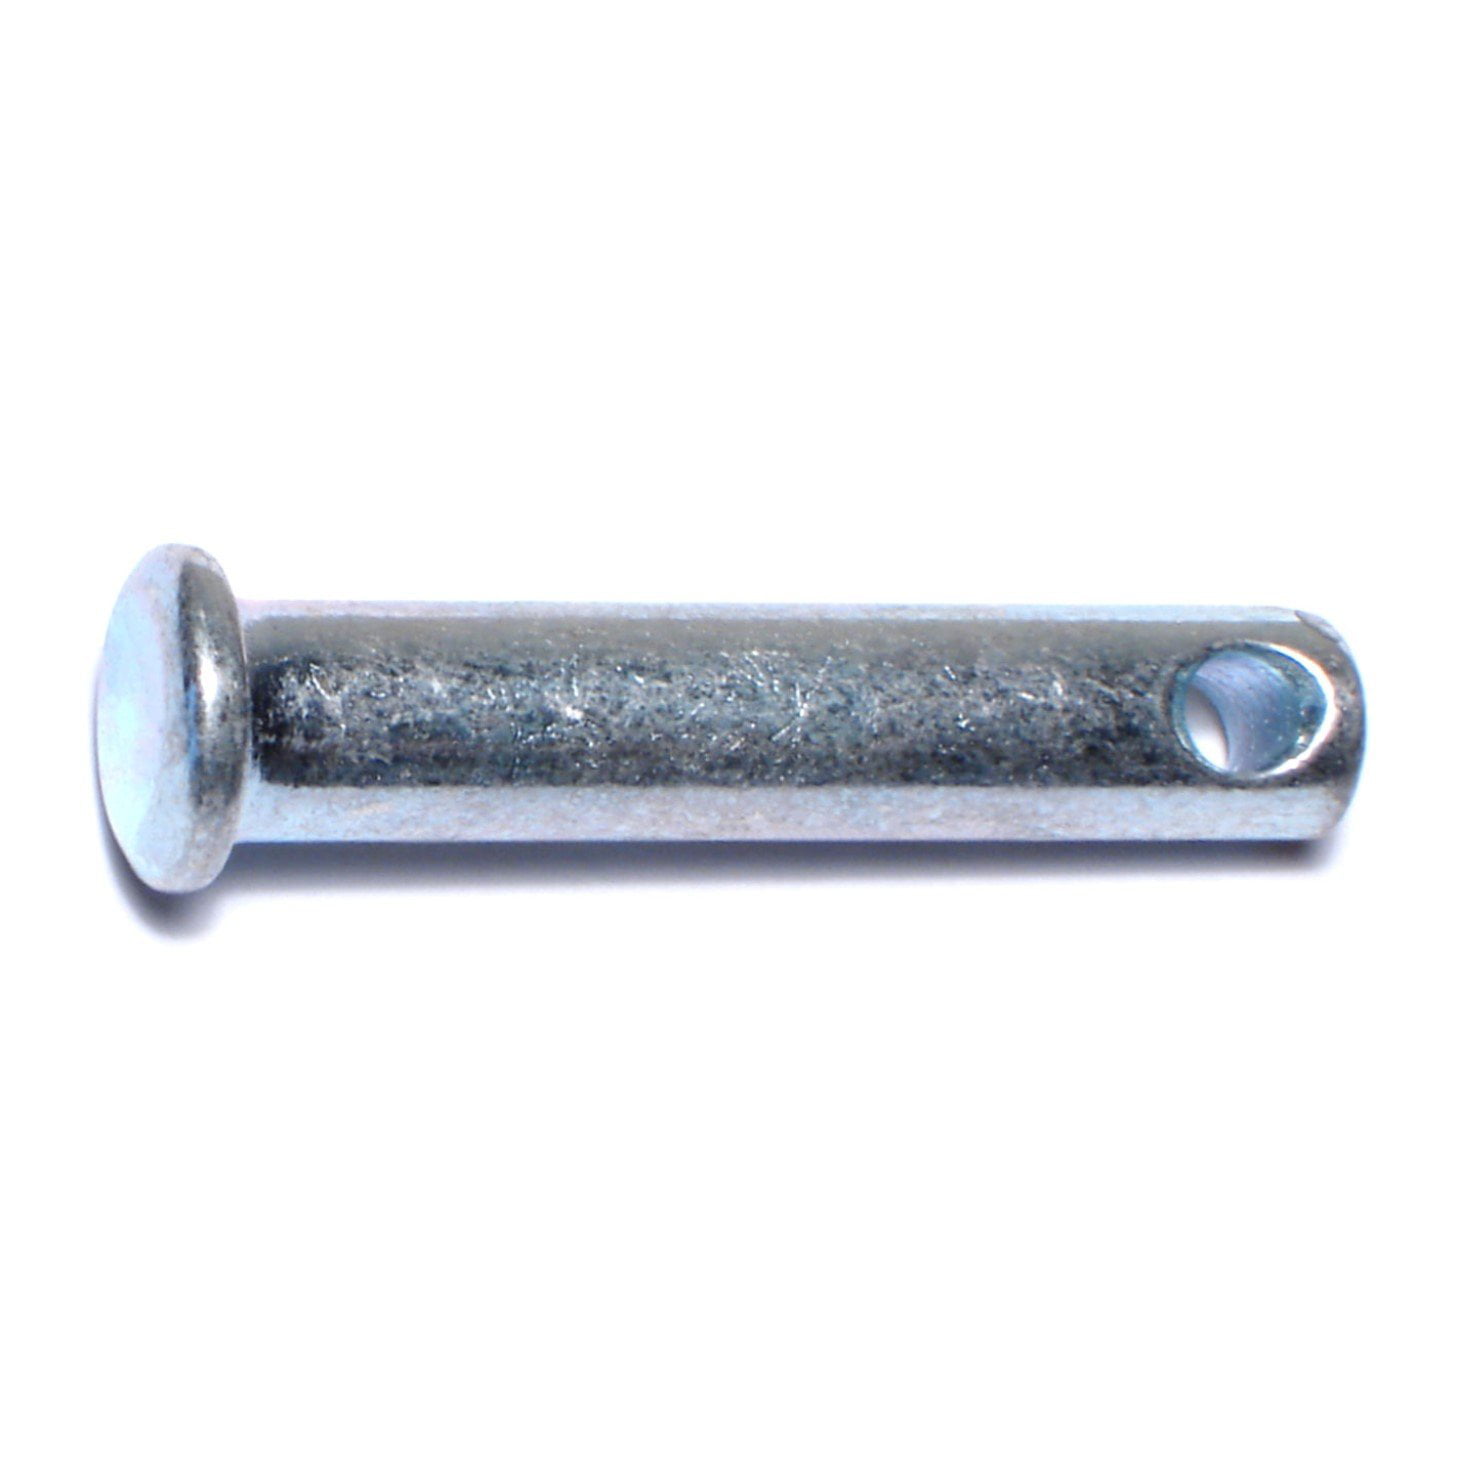 Single Hole Clevis Pins,5mm x 40mm Flat Head Zinc-Plating Steel  10 Pcs 